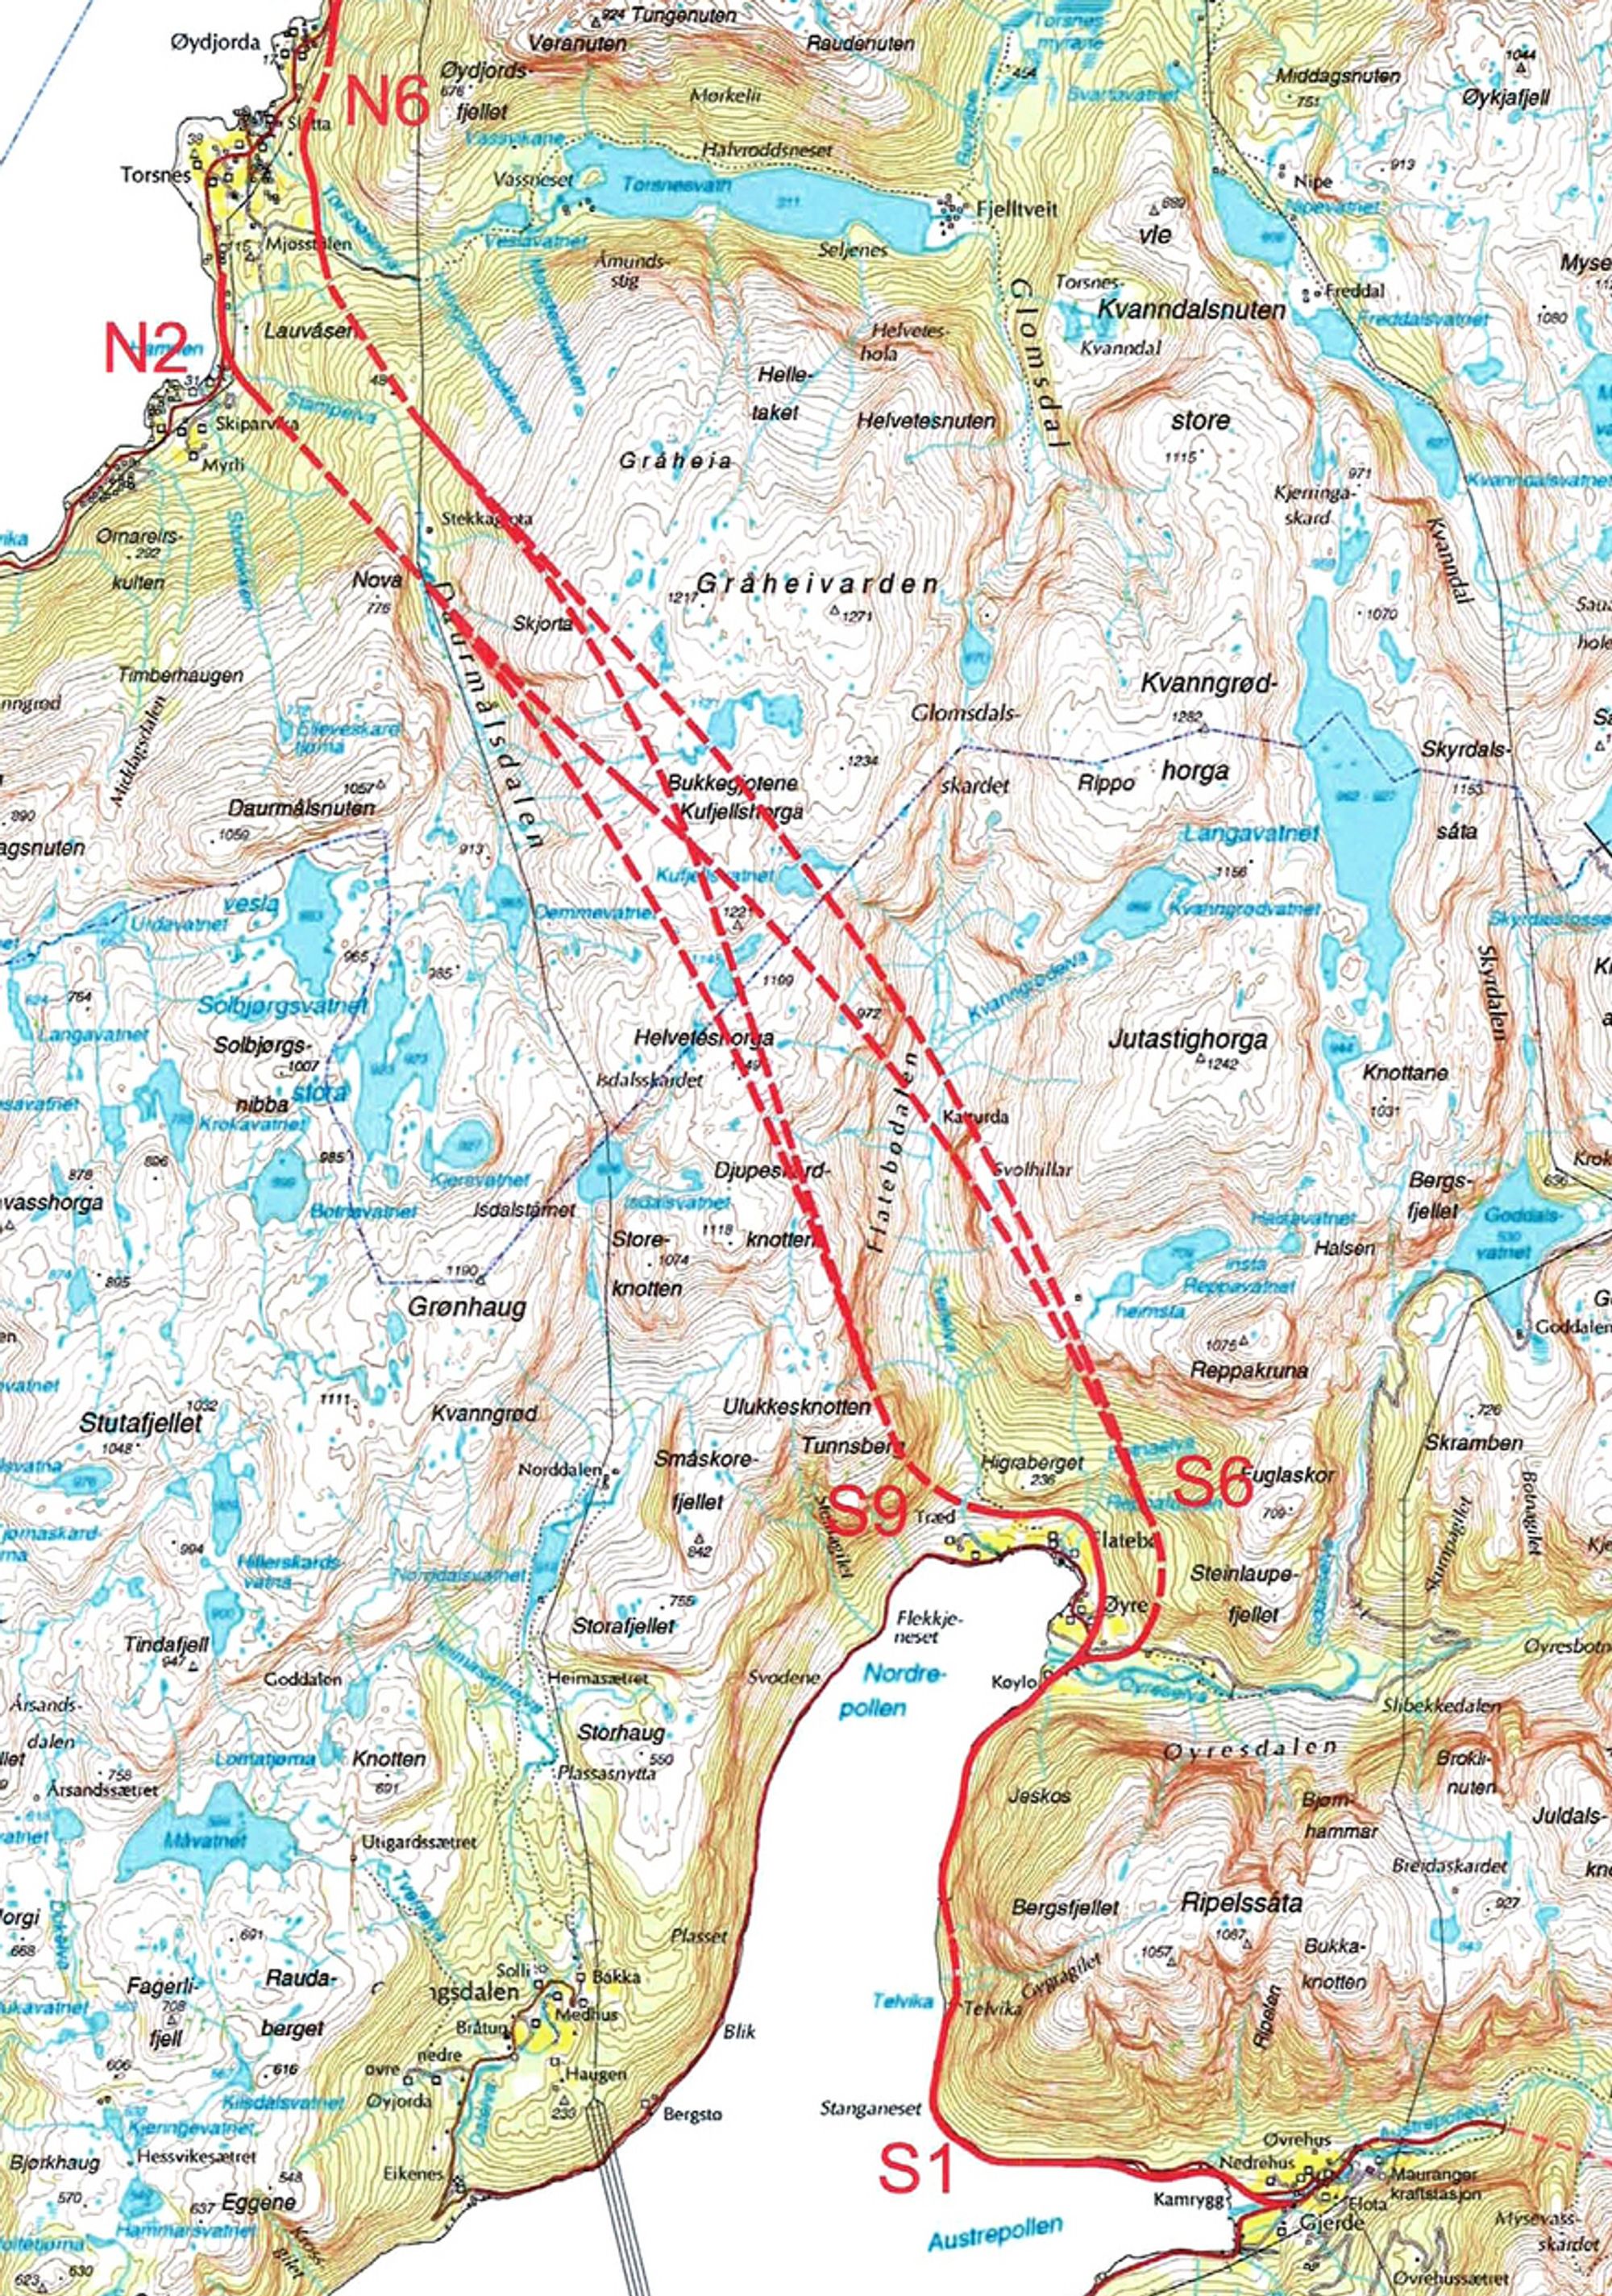 Kartet viser flere aktuelle alternativer for Jondalstunnelen. Det som ble valgt, går mellom S 6 og N 2. Tunnelen blir 9,8 km lang, Norges lengste fylkesvegtunnel.